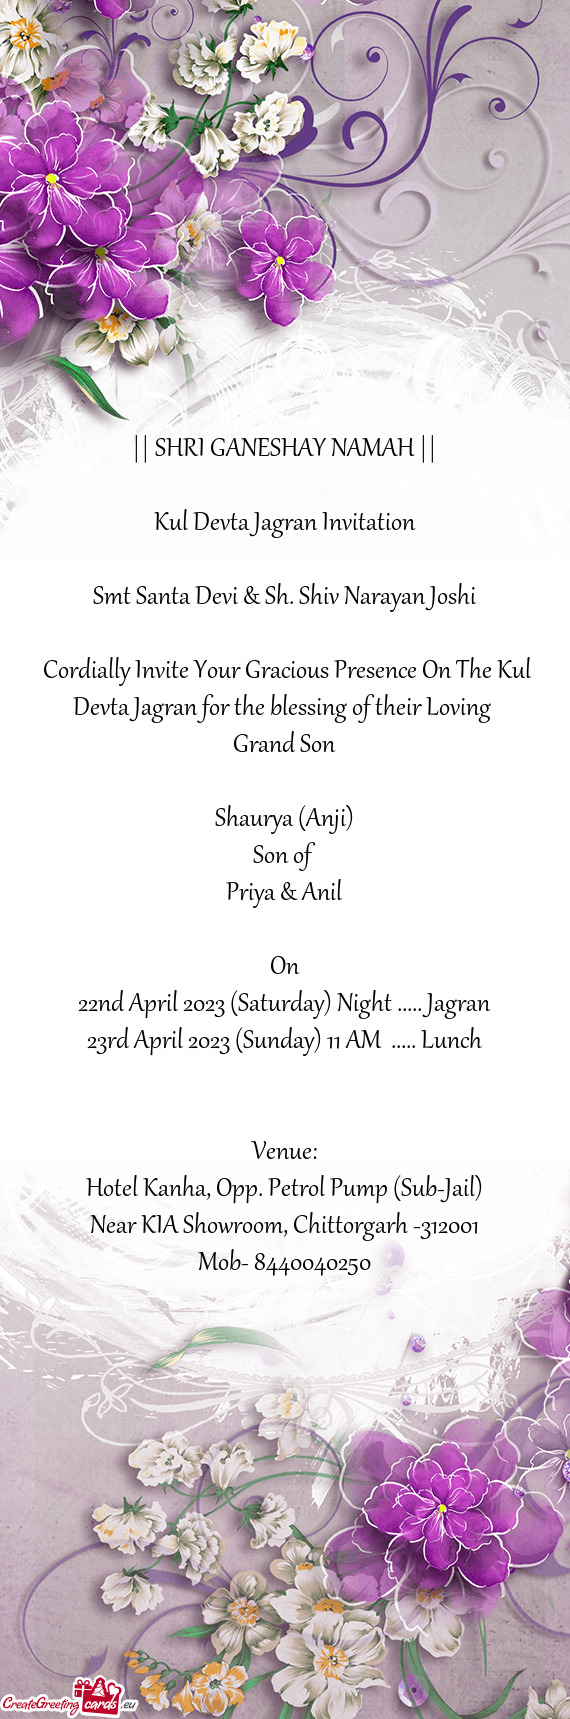 Kul Devta Jagran Invitation